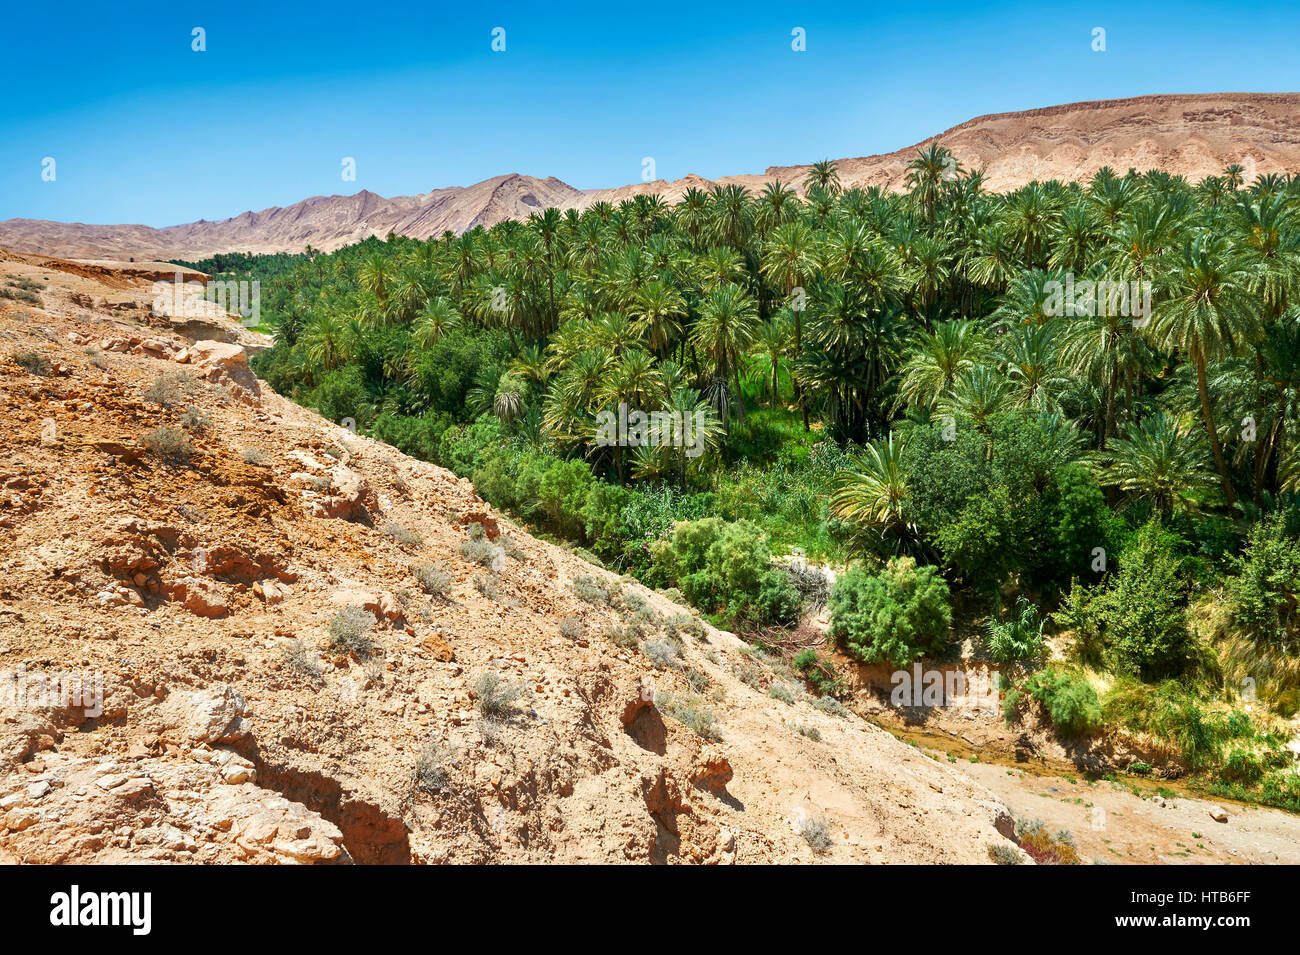 Les dattiers du désert du Sahara oasis de Mides, Tunisie, Afrique du Nord Banque D'Images